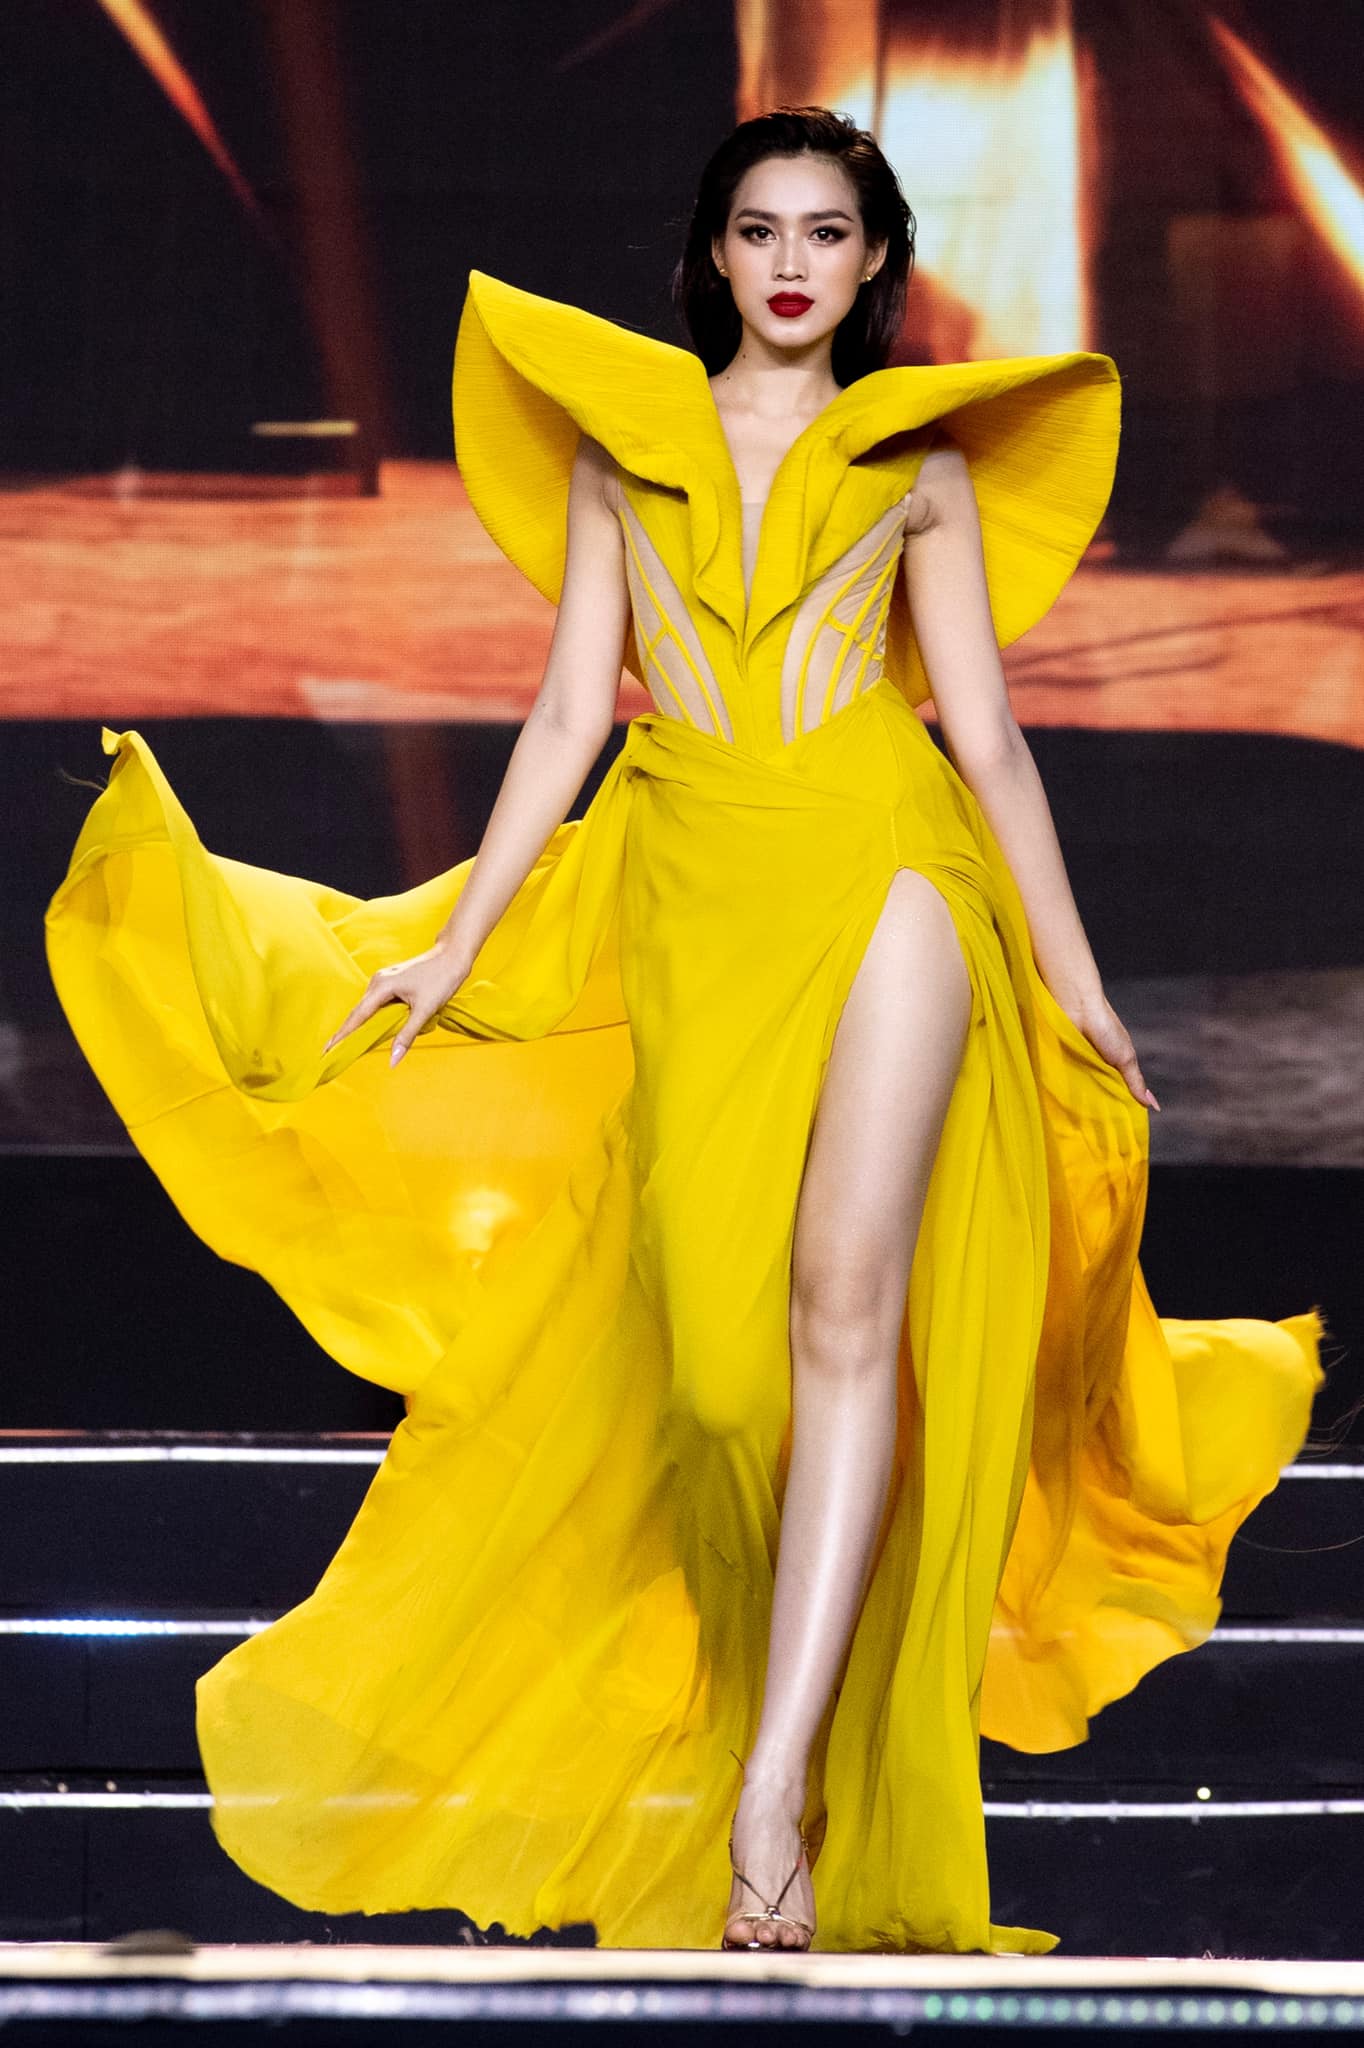 Hoa hậu Đỗ Hà khoe đôi chân dài gợi cảm trong thiết kế màu vàng nổi bật - Ảnh 1.